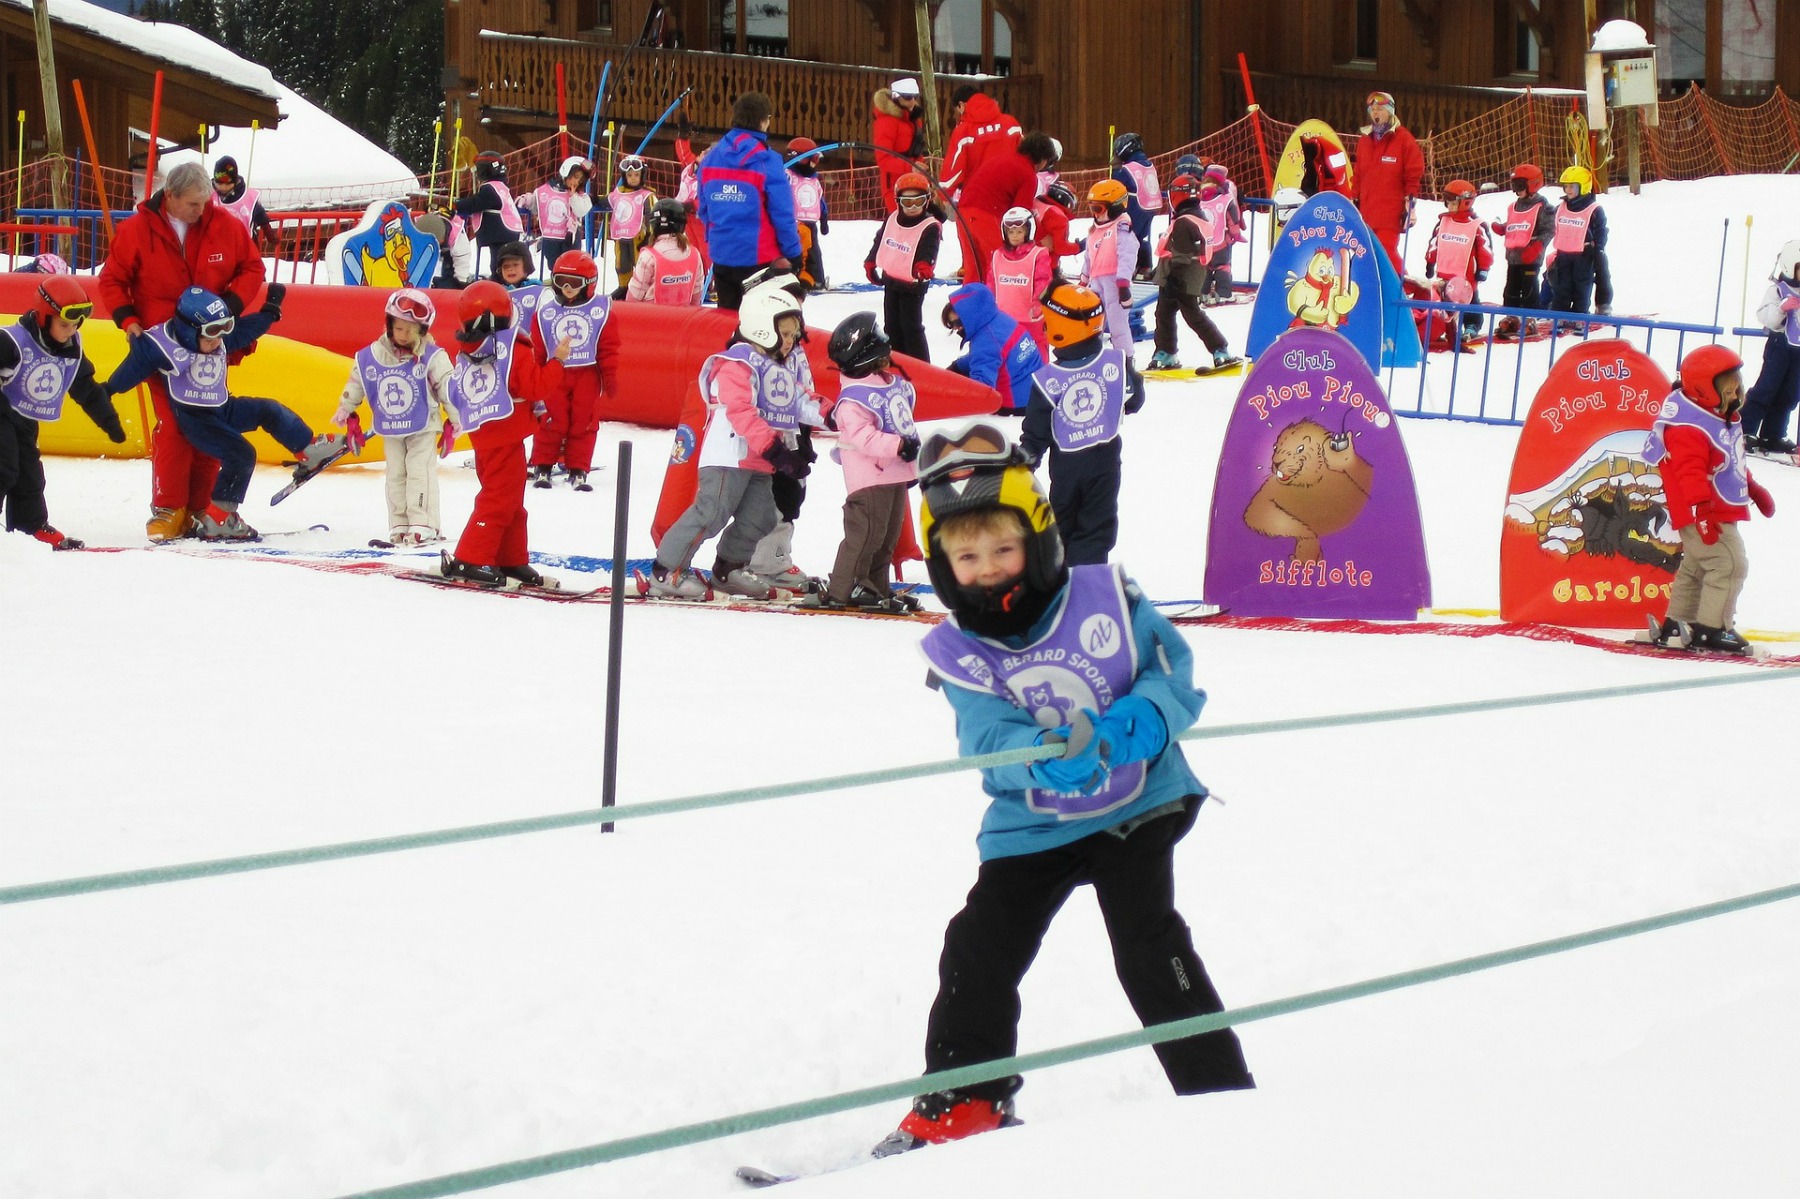 Ski school for kids